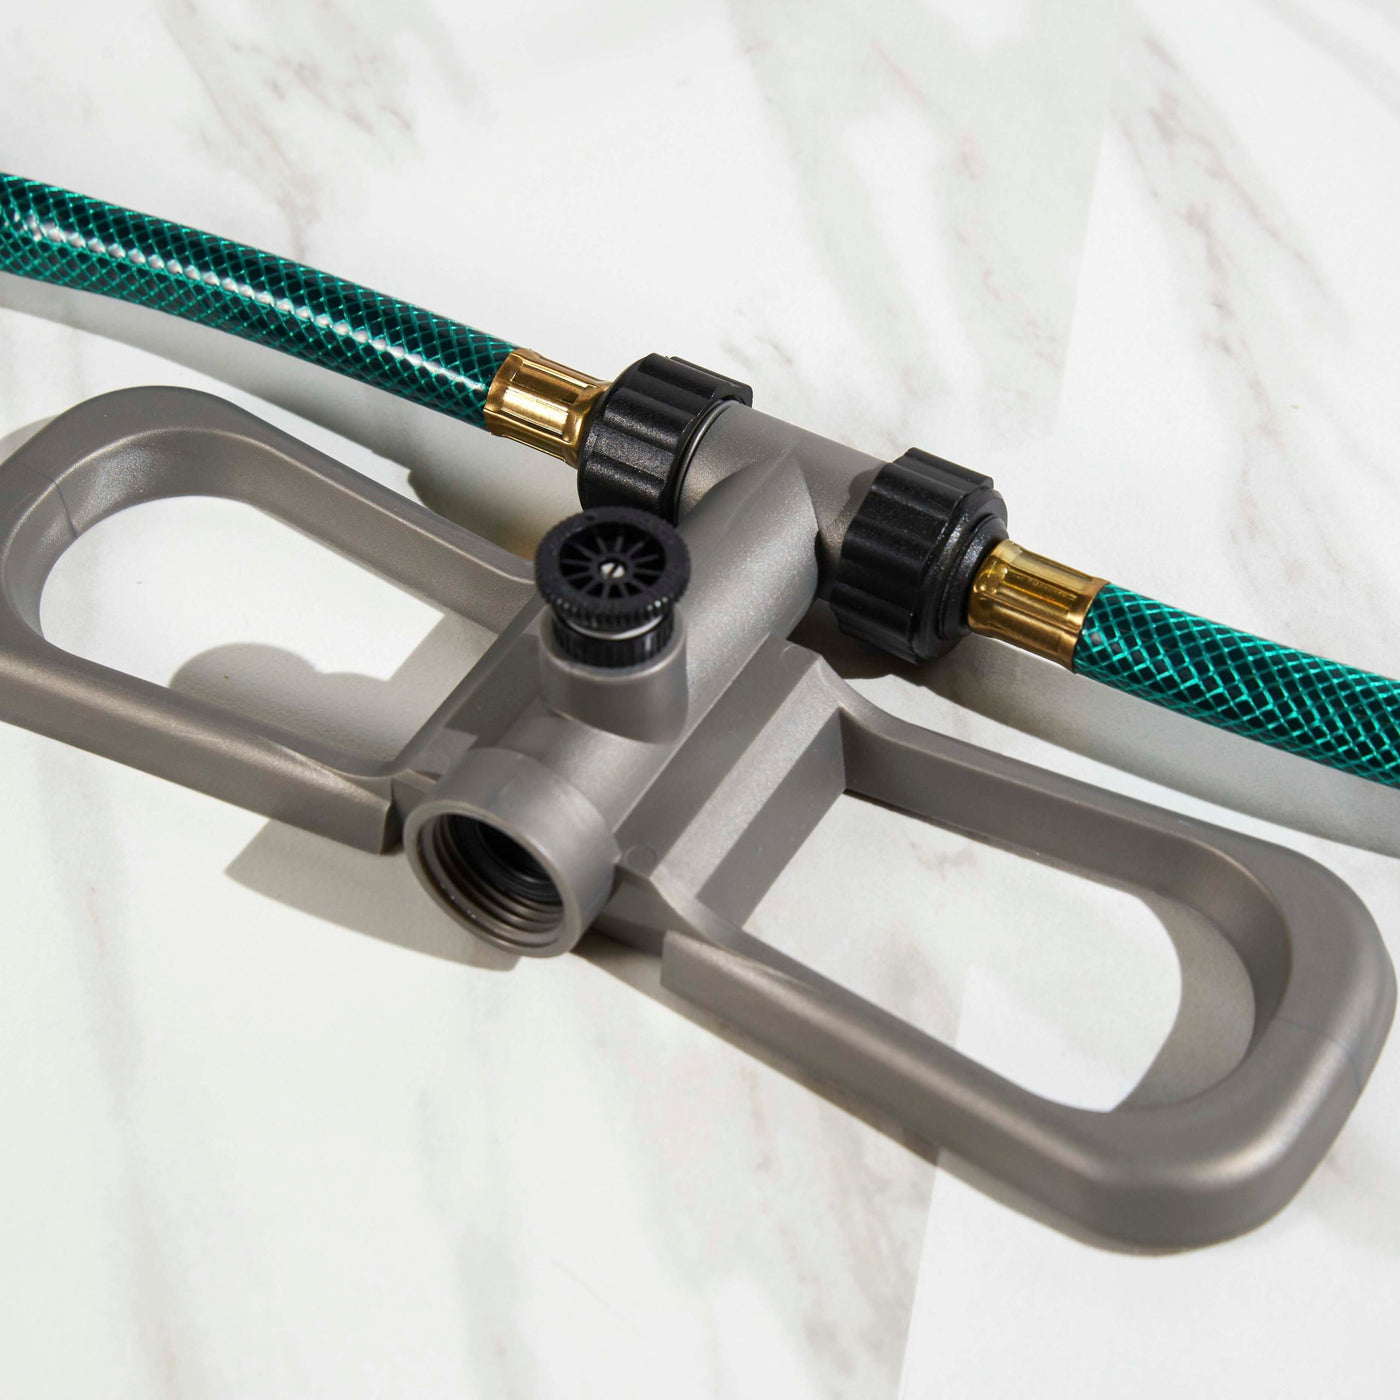 Standard connection: Attaches to an outdoor garden hose.